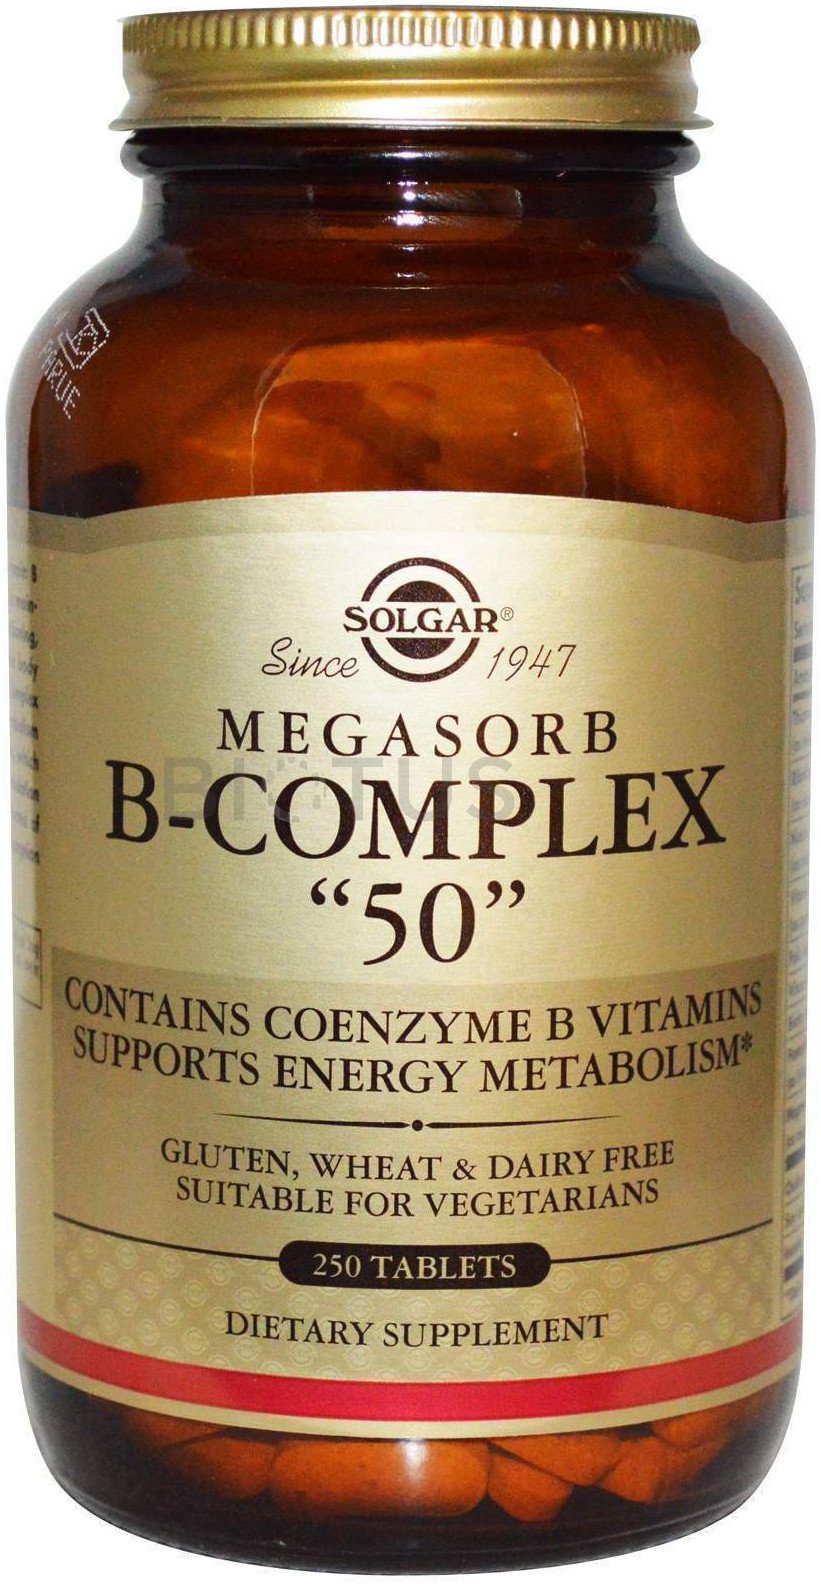 Megasorb B-Complex 50, 100 piezas, Solgar. Complejos vitaminas y minerales. General Health Immunity enhancement 